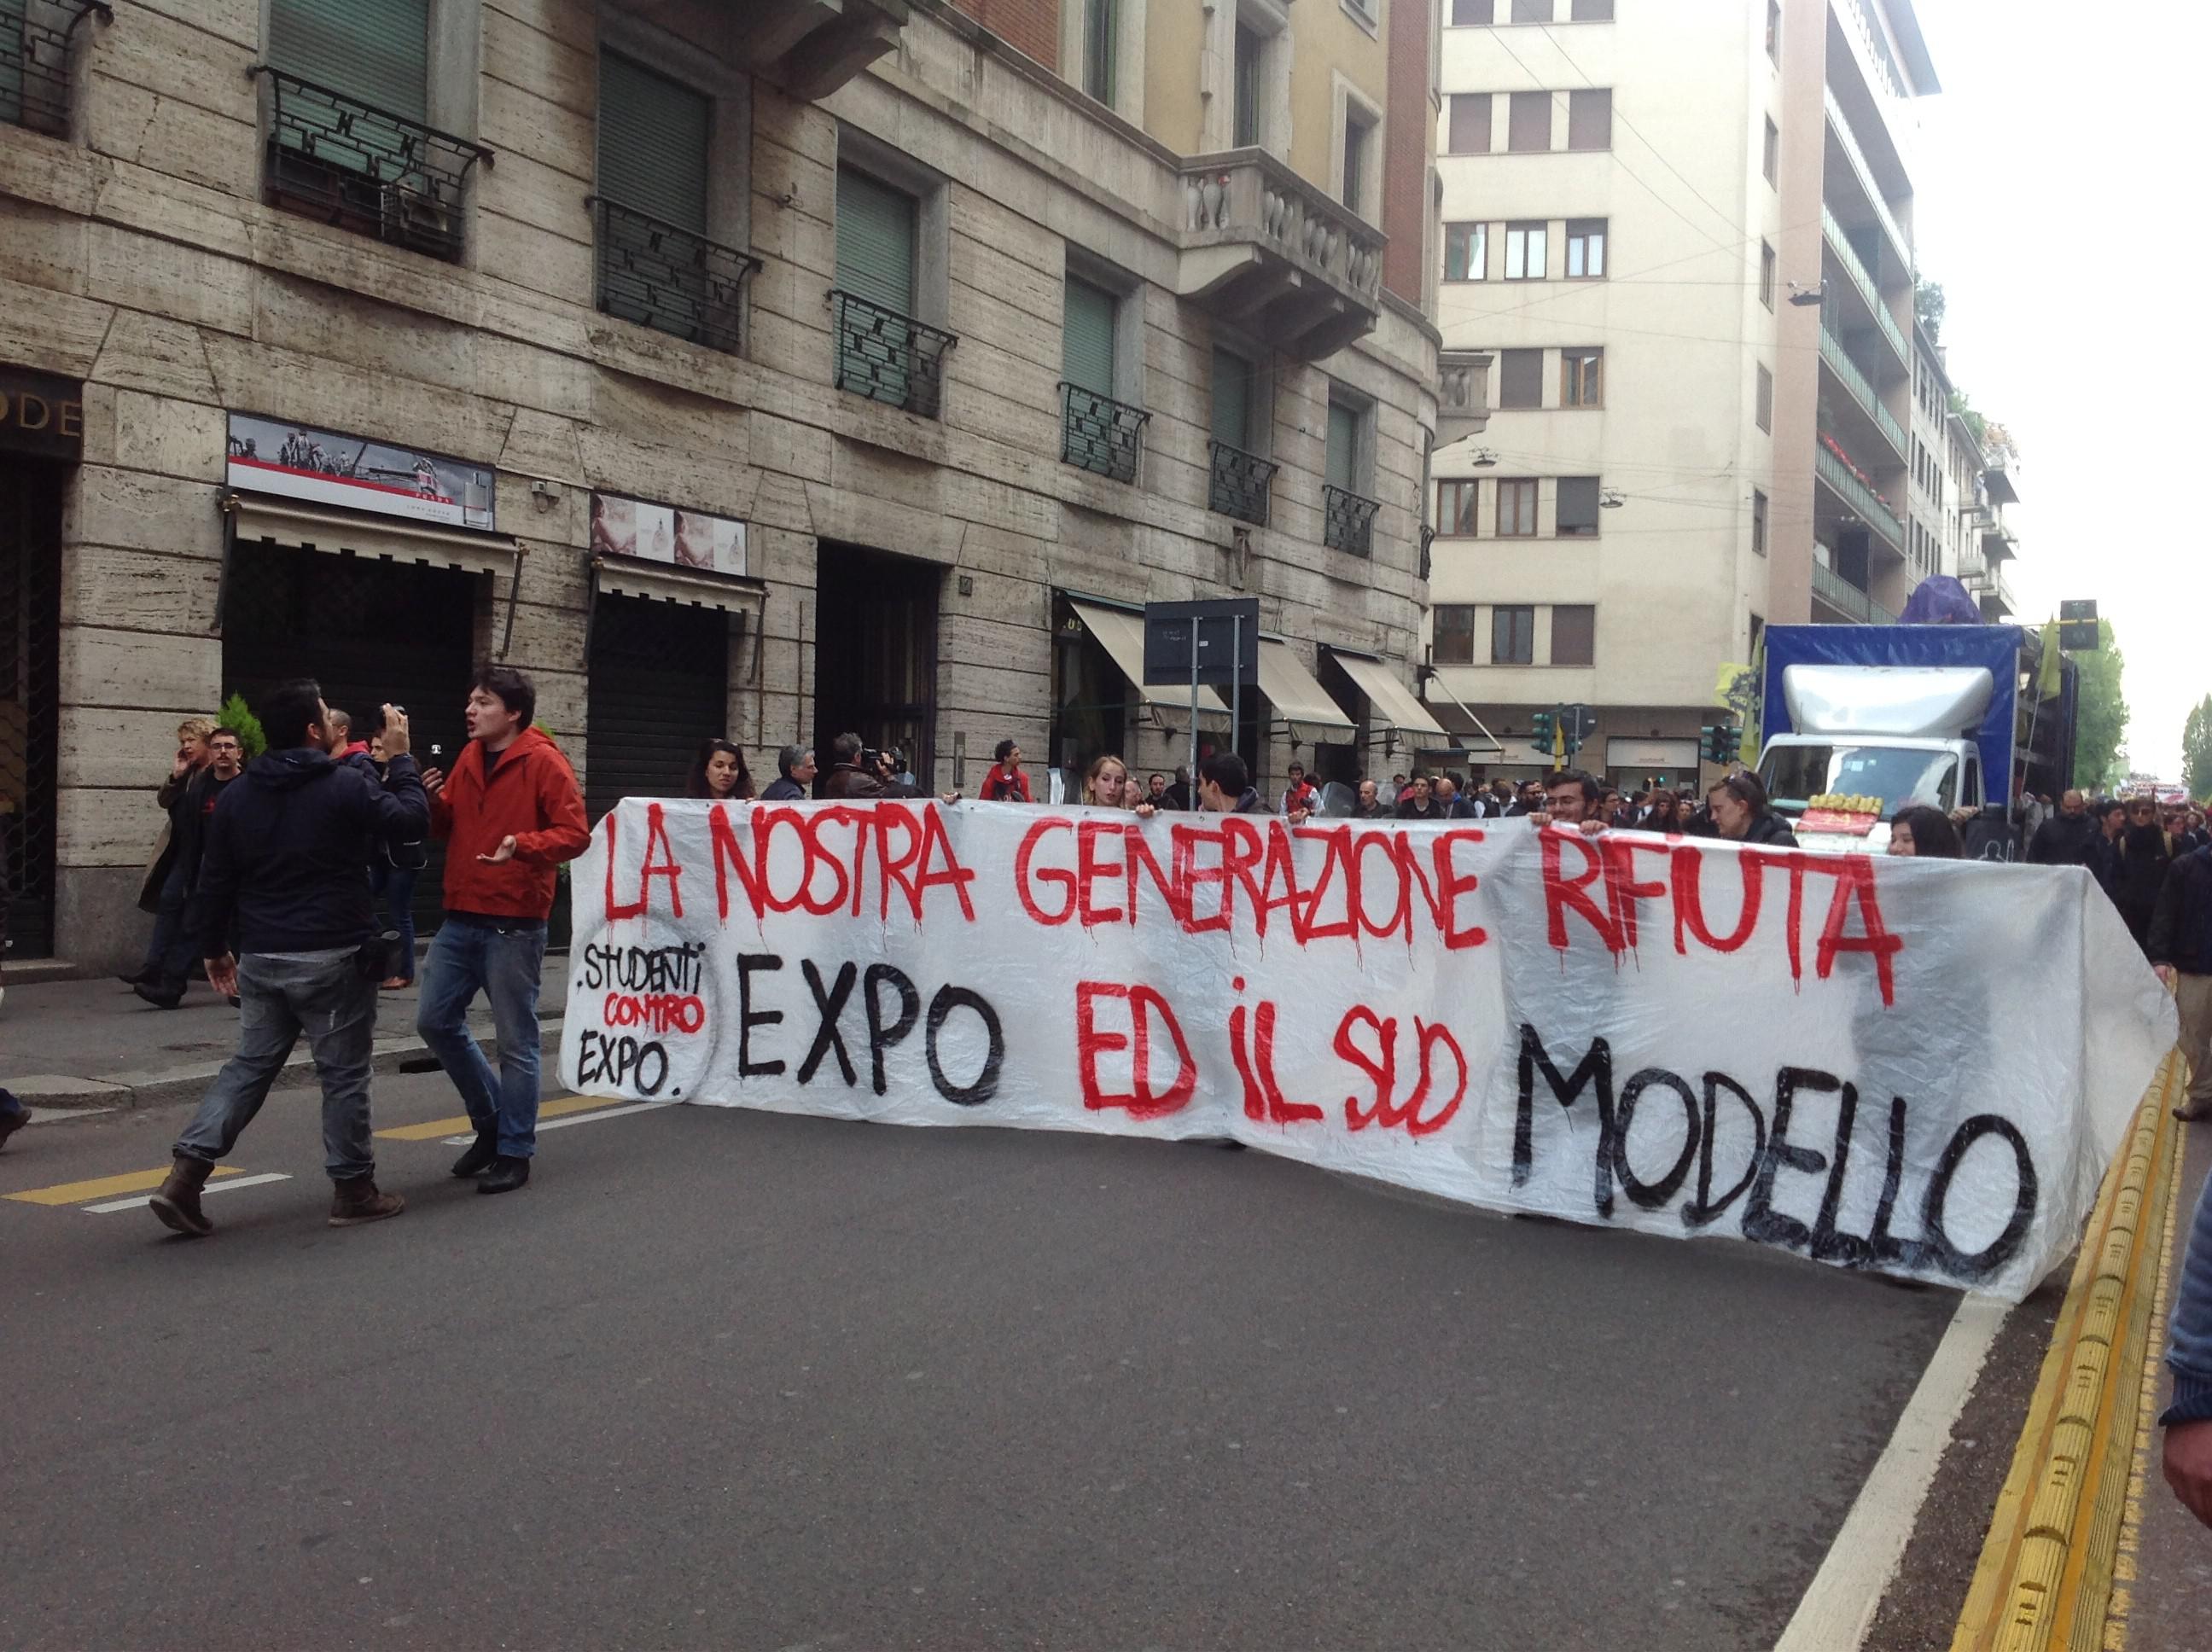 Striscione contro Expo esposto in manifestazione a Milano